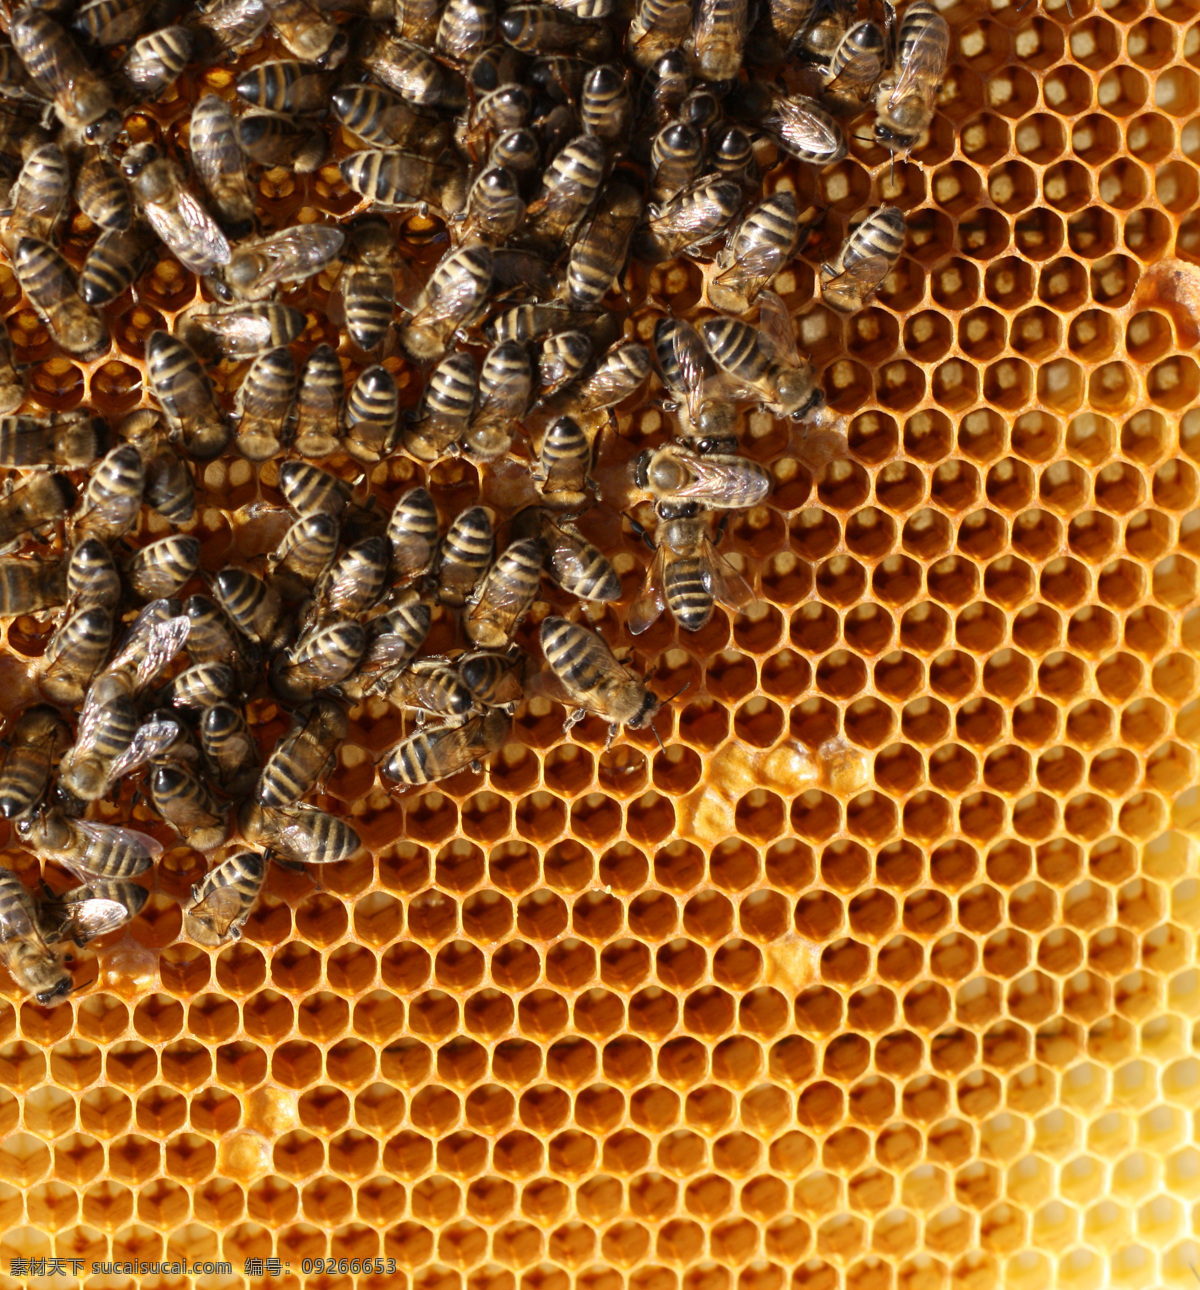 蜜蜂 蜂巢 蜂蜜 蜂窝 补品 昆虫世界 生物世界